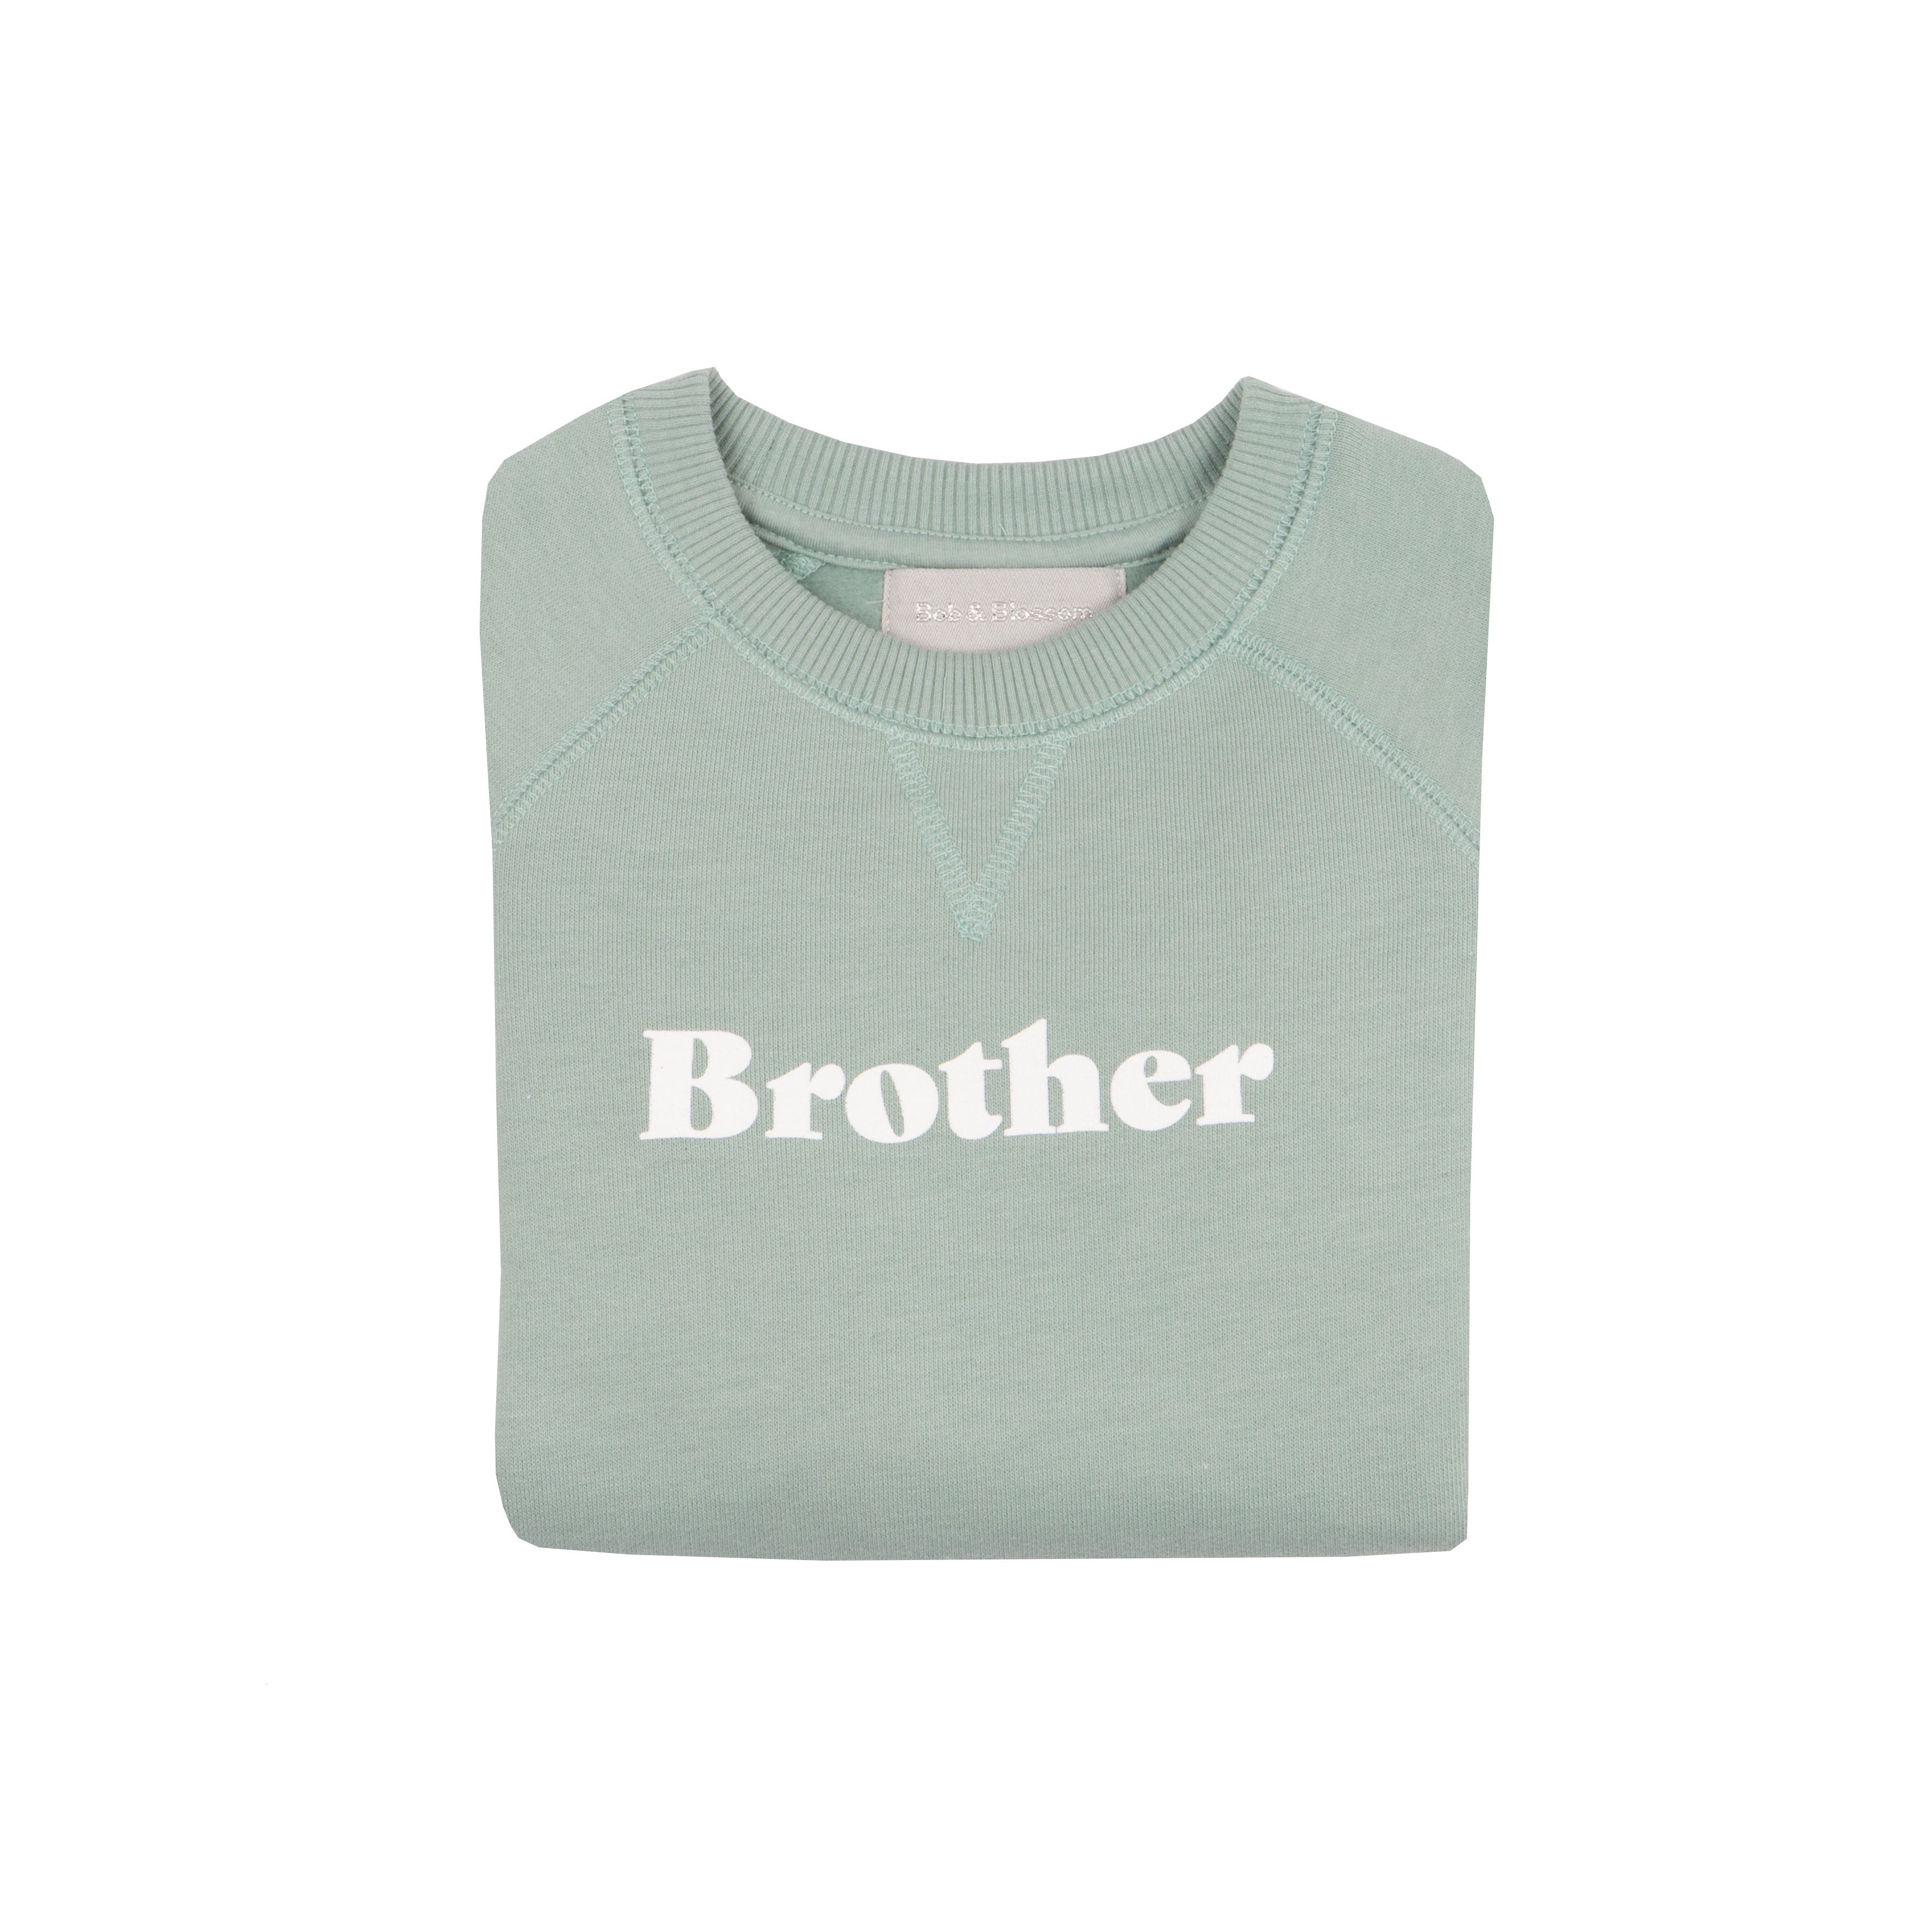 'Brother' Sweatshirt